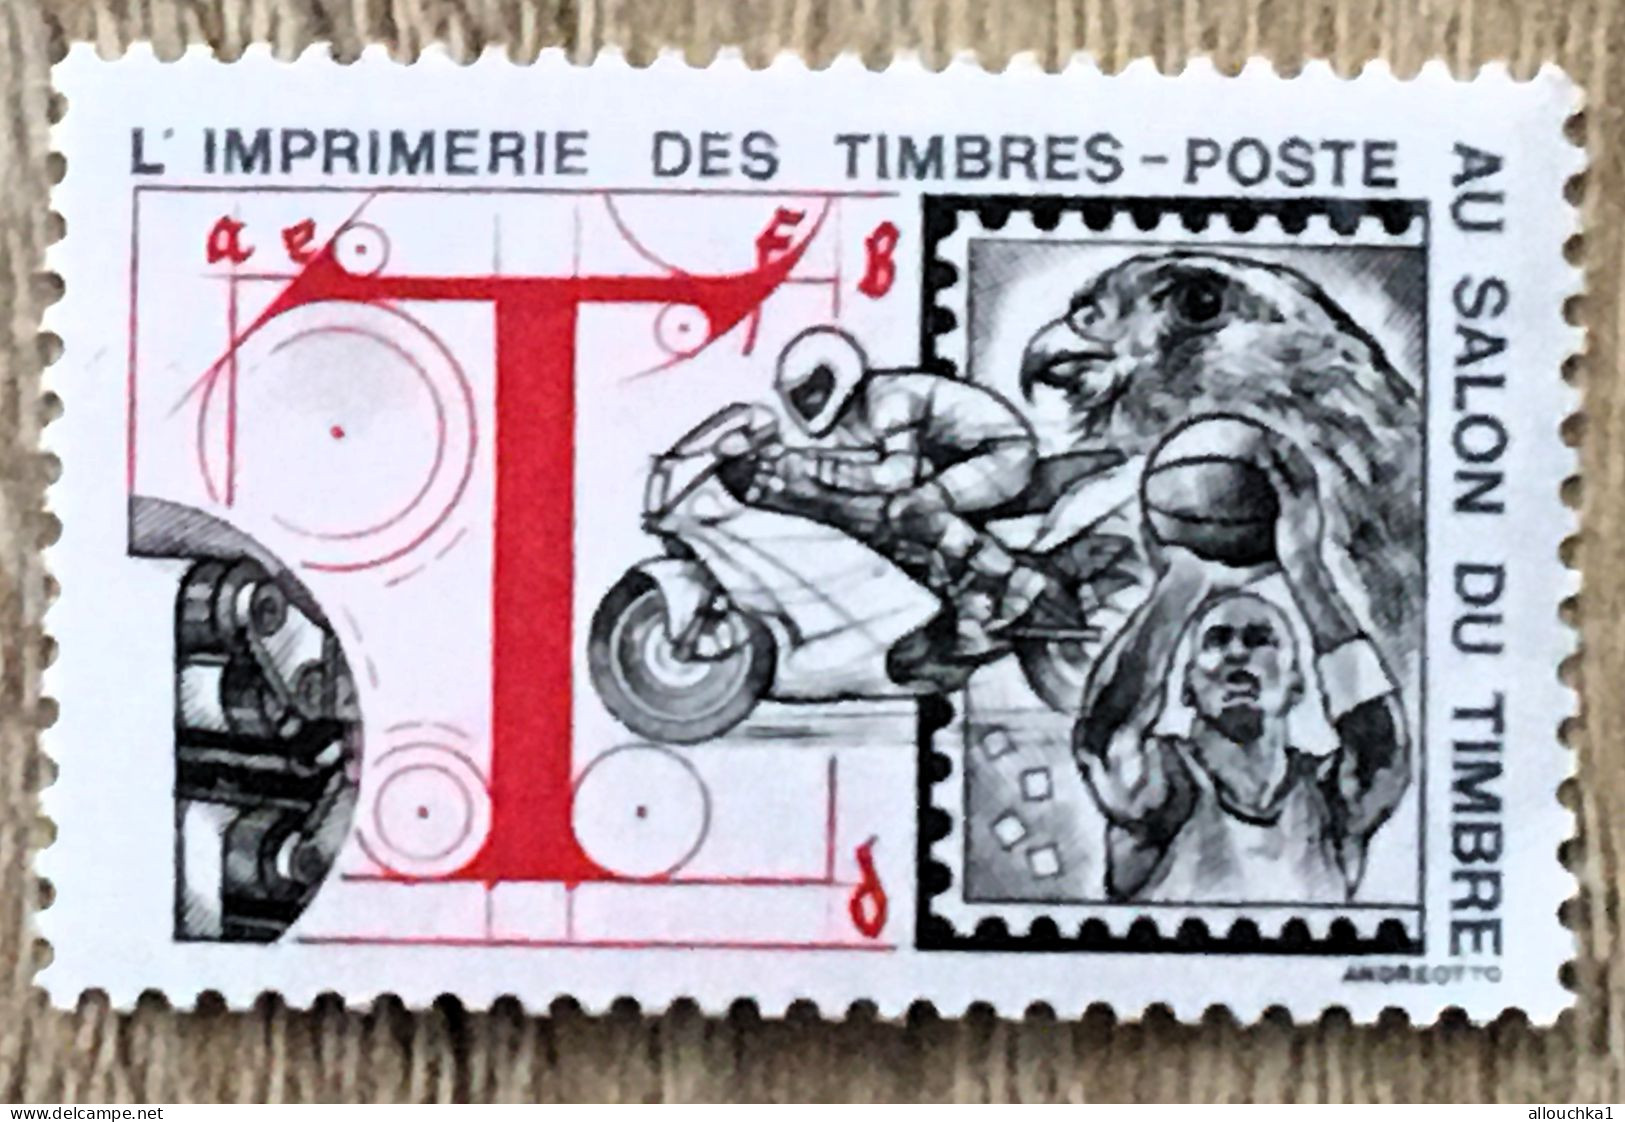 Imprimerie Timbres Poste Au Salon Du Timbre-2 Timbres Vignette**Expo-Philatélique-Erinnophilie-[E]Stamp-Sticker-Viñeta - Exposiciones Filatelicas